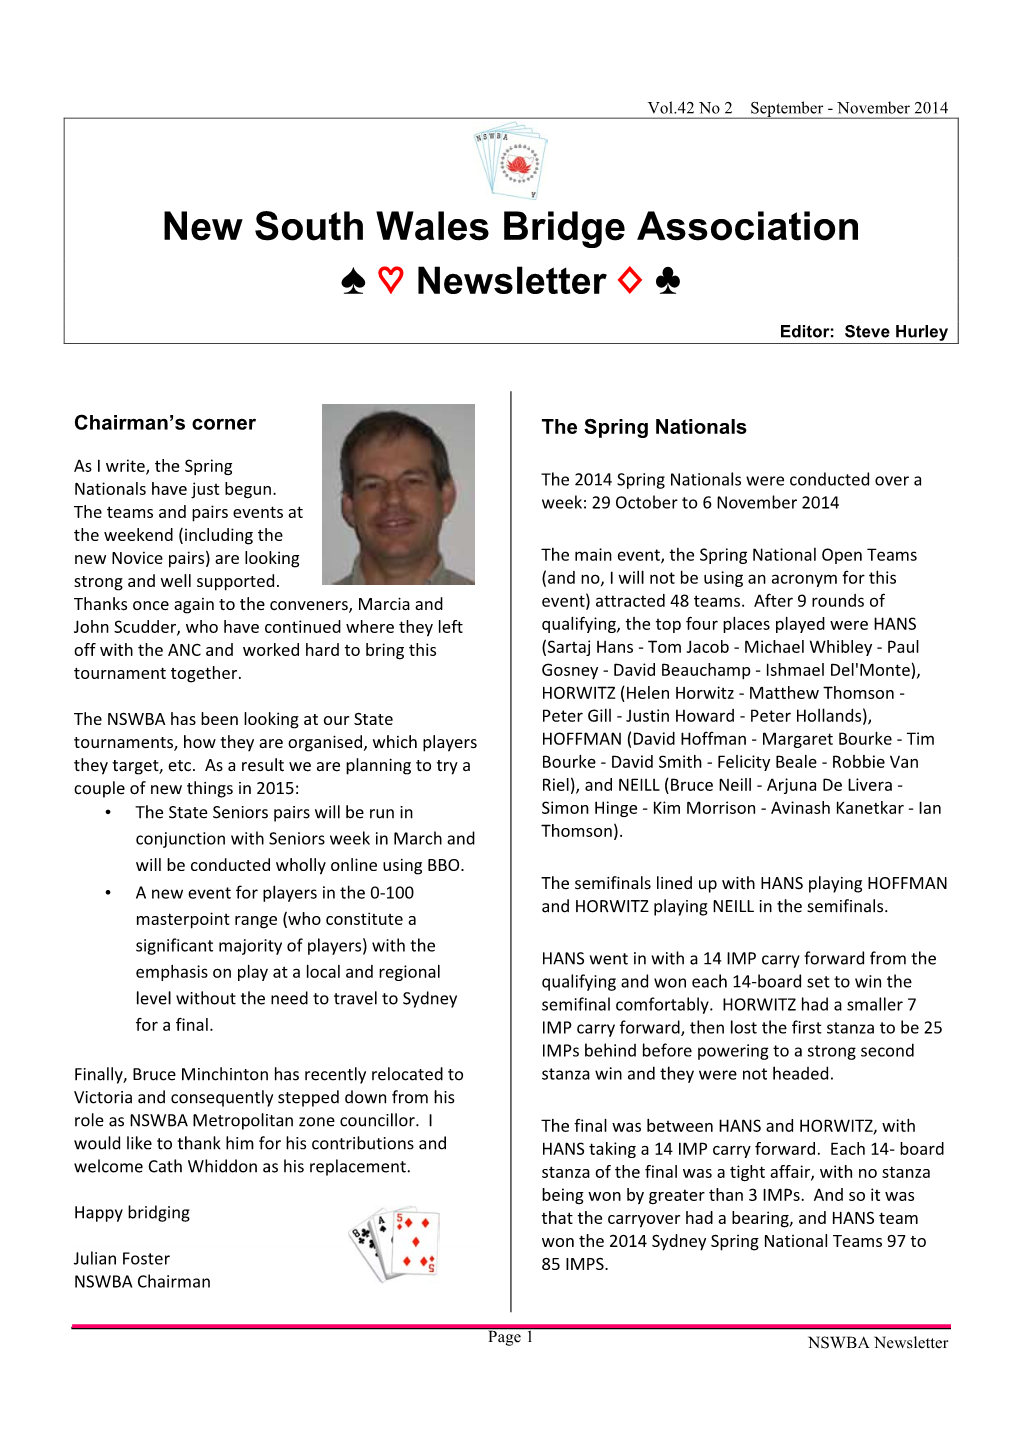 NSWBA Newsletter